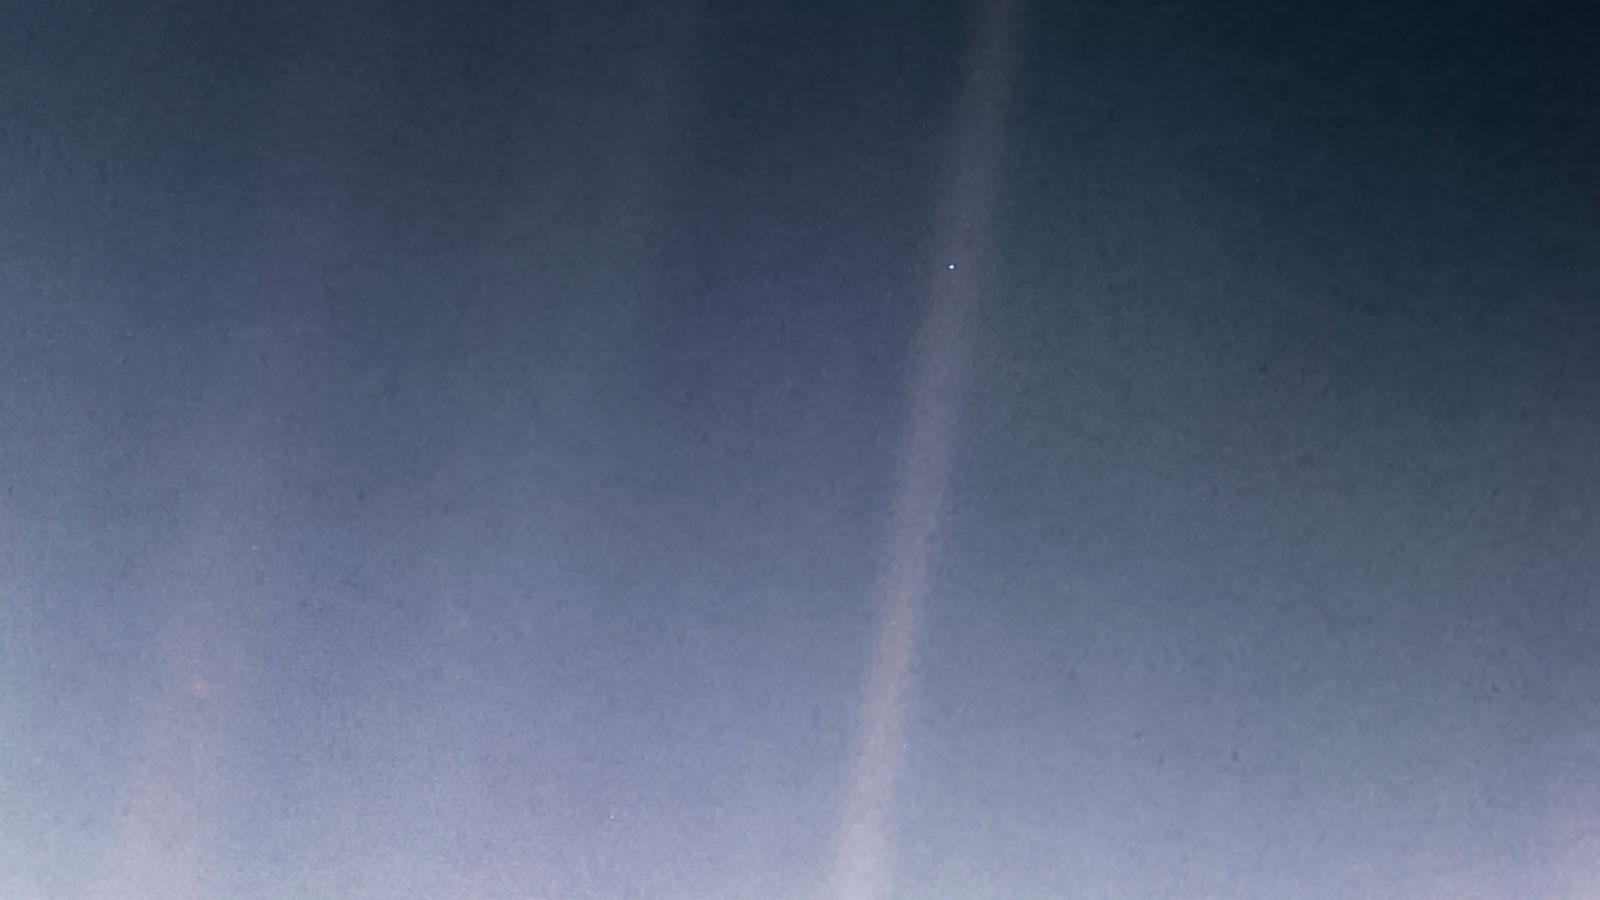 Pontos azuis pálidos.  Em 1990, a Voyager 1 apontou sua câmera para a Terra a 6 bilhões de quilômetros do Sol.  A Terra apareceu na imagem como um pequeno ponto flutuando no vasto universo.  Imagem = NASA/JPL-Caltech